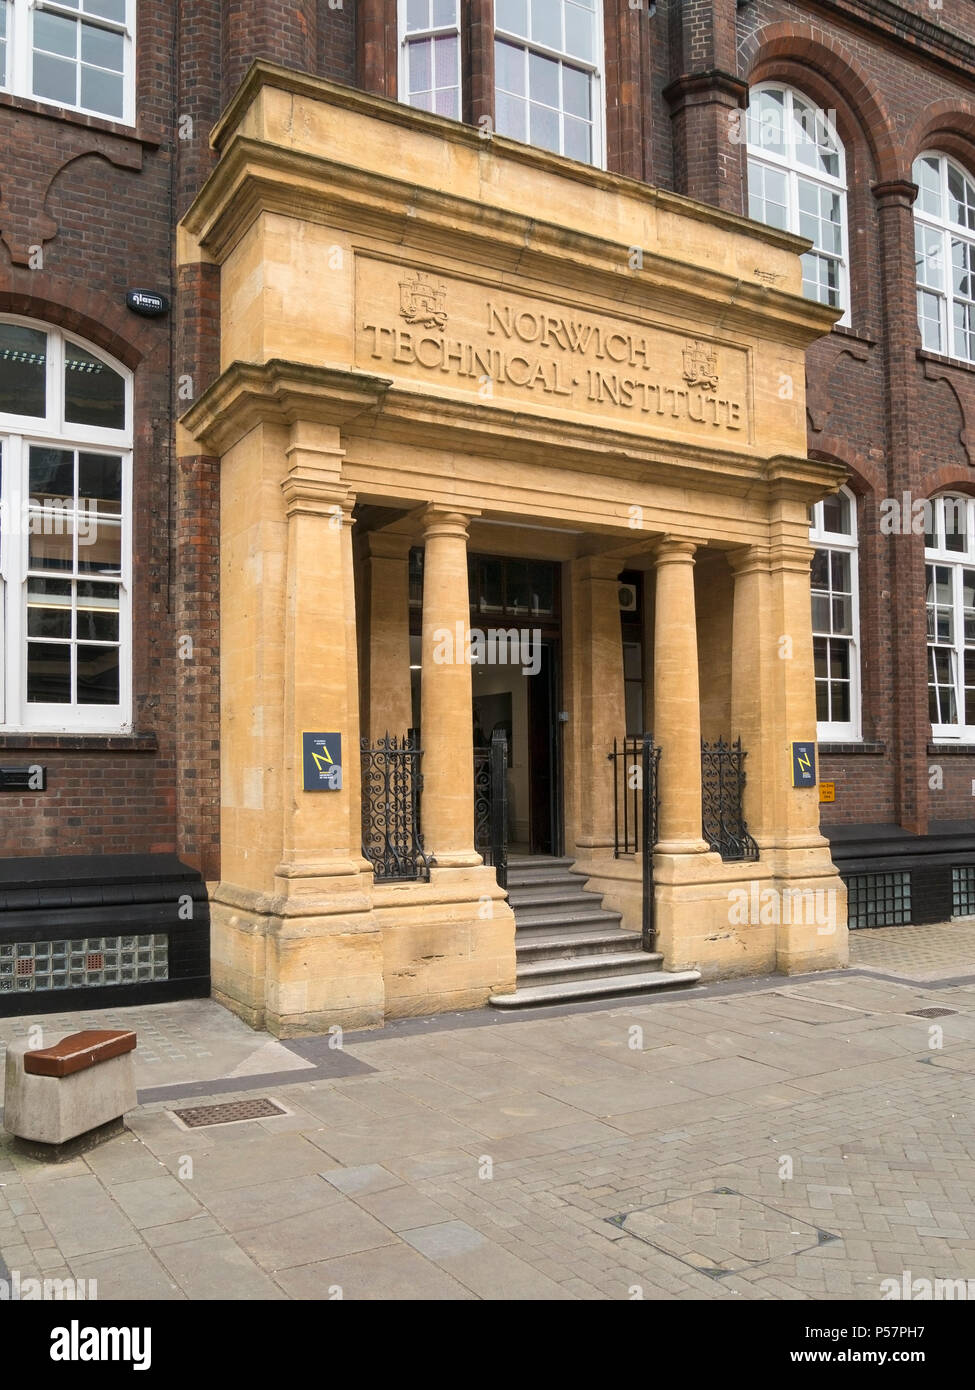 Reich verzierten Stein Terrasse und Eingang nach Norwich Technisches Institut Gebäude (jetzt St George's Building, Norwich Universität der Künste), Norwich, England. Stockfoto